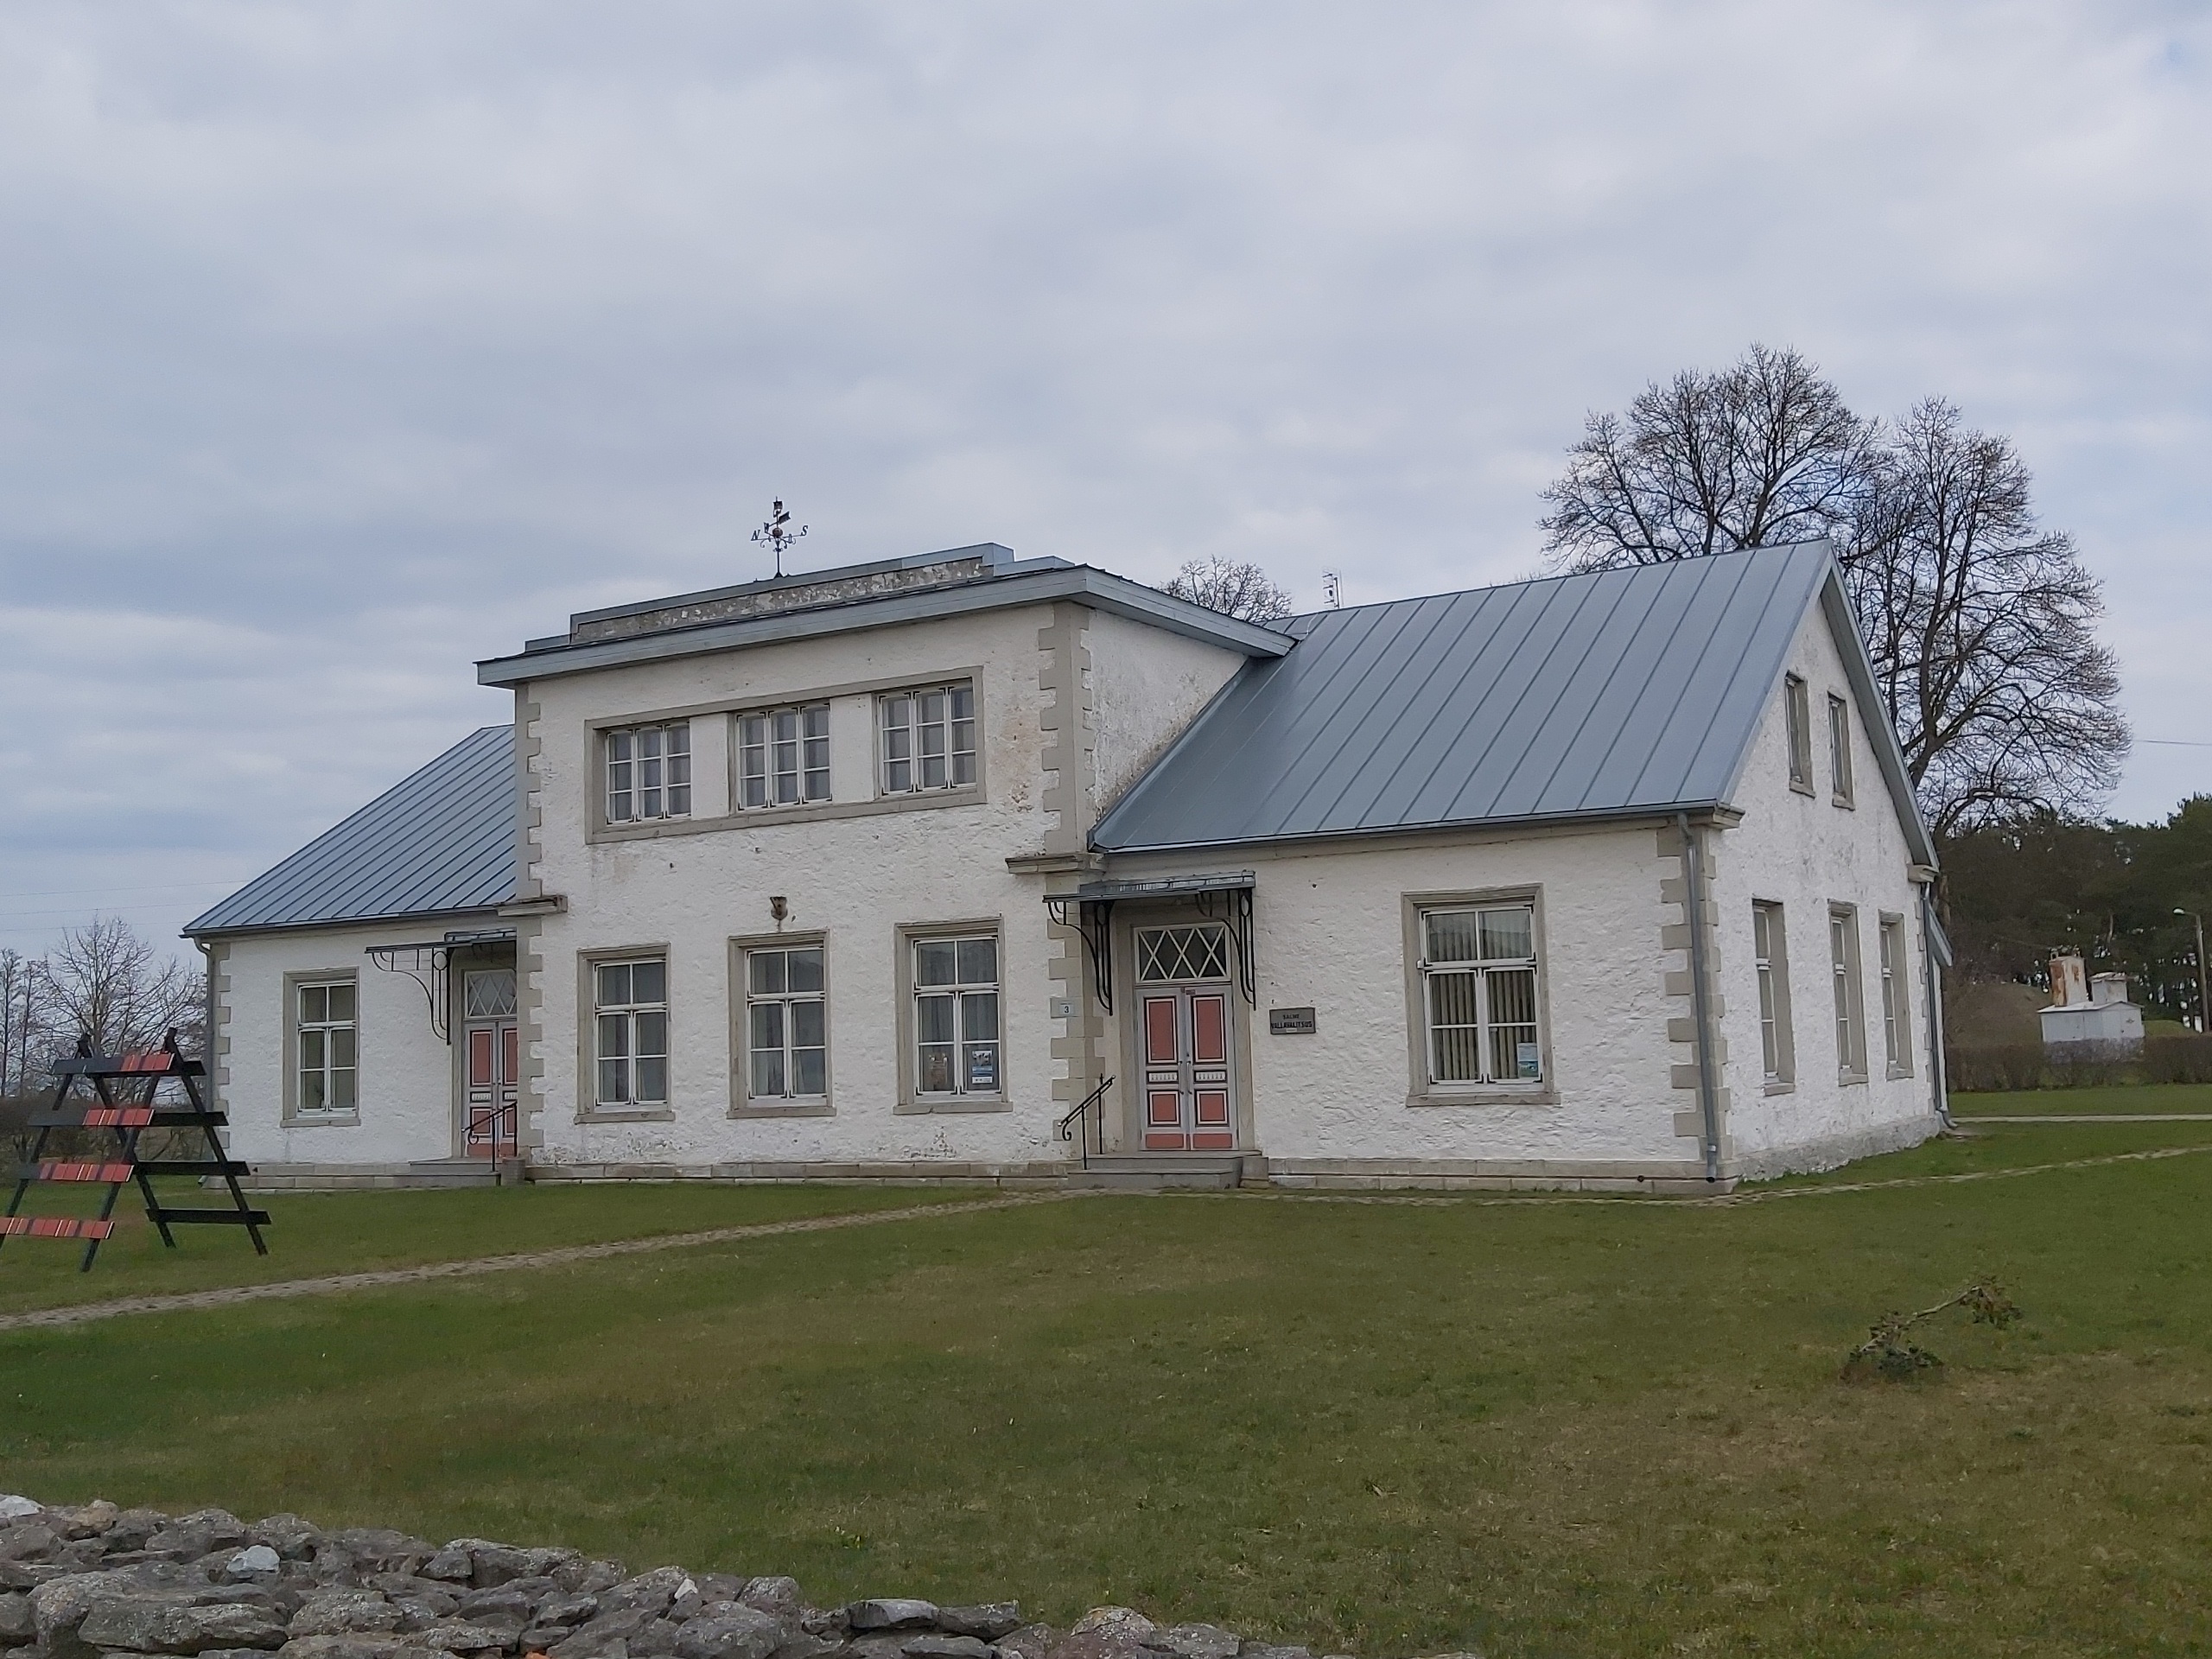 Salme Start School buildings in Saaremaa rephoto